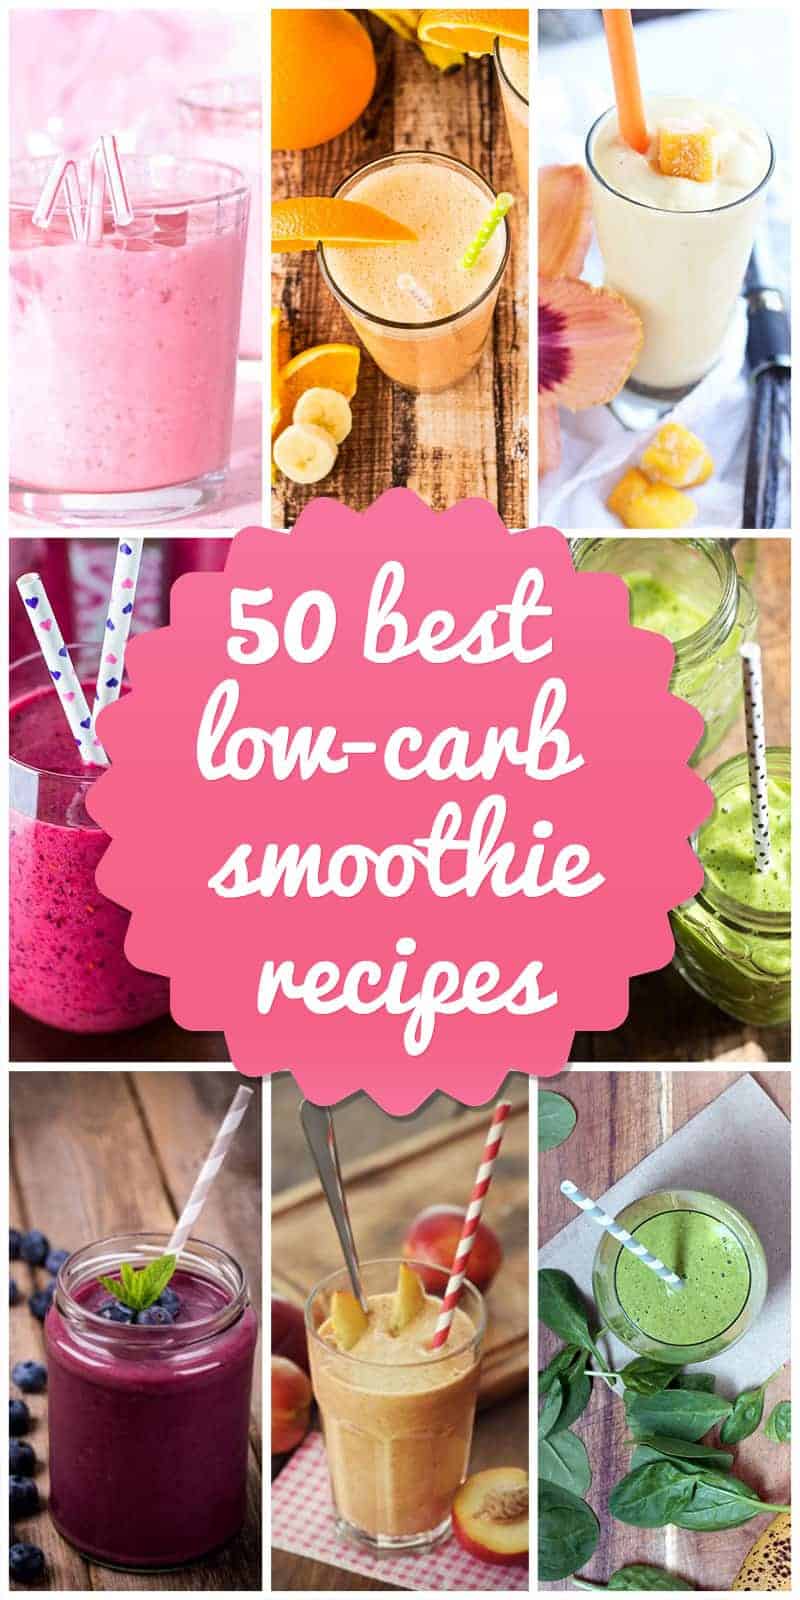 low-carb smoothie recipes